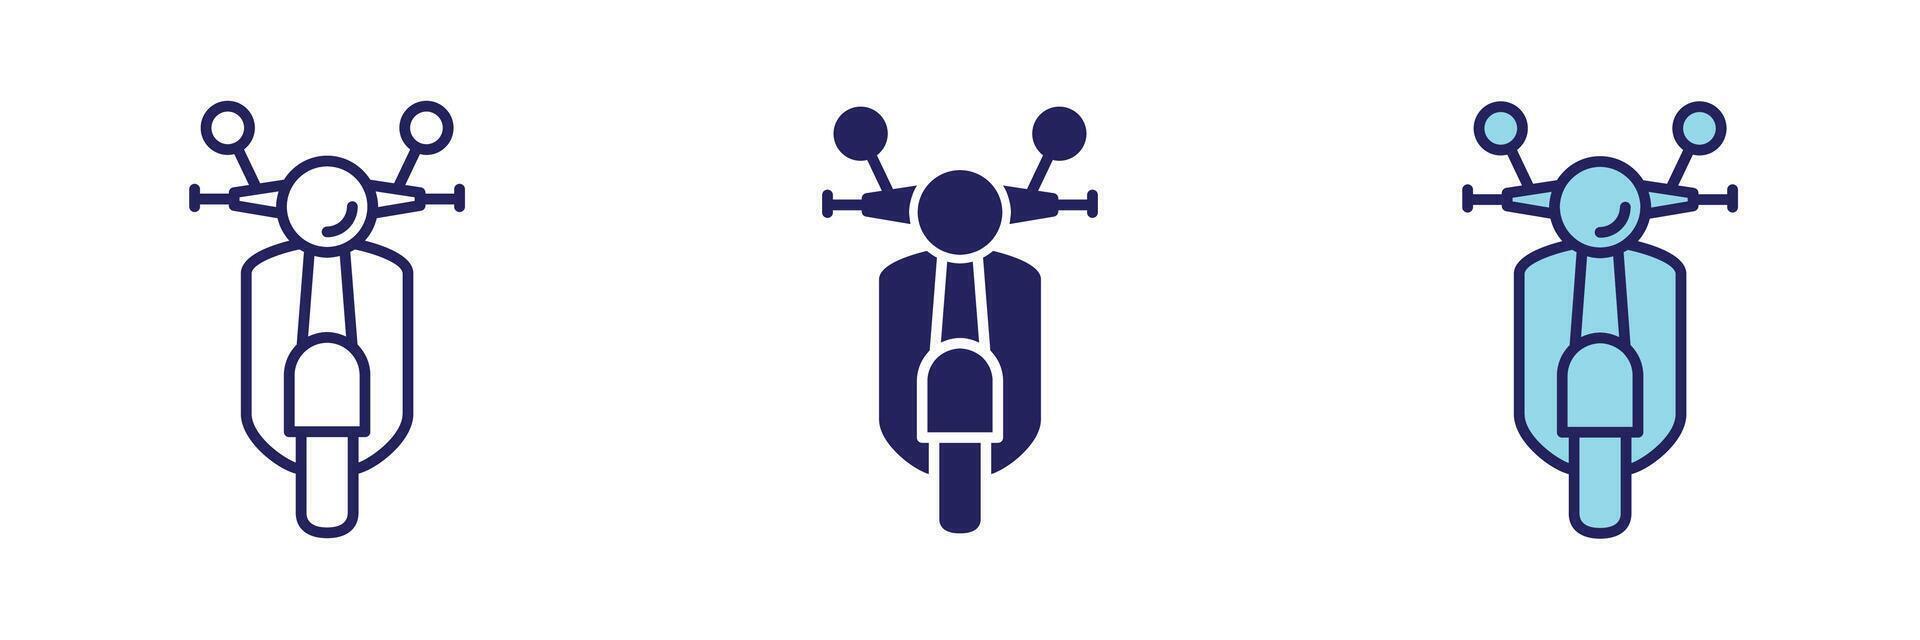 motociclo mezzi di trasporto icona - navigazione impostato vettore